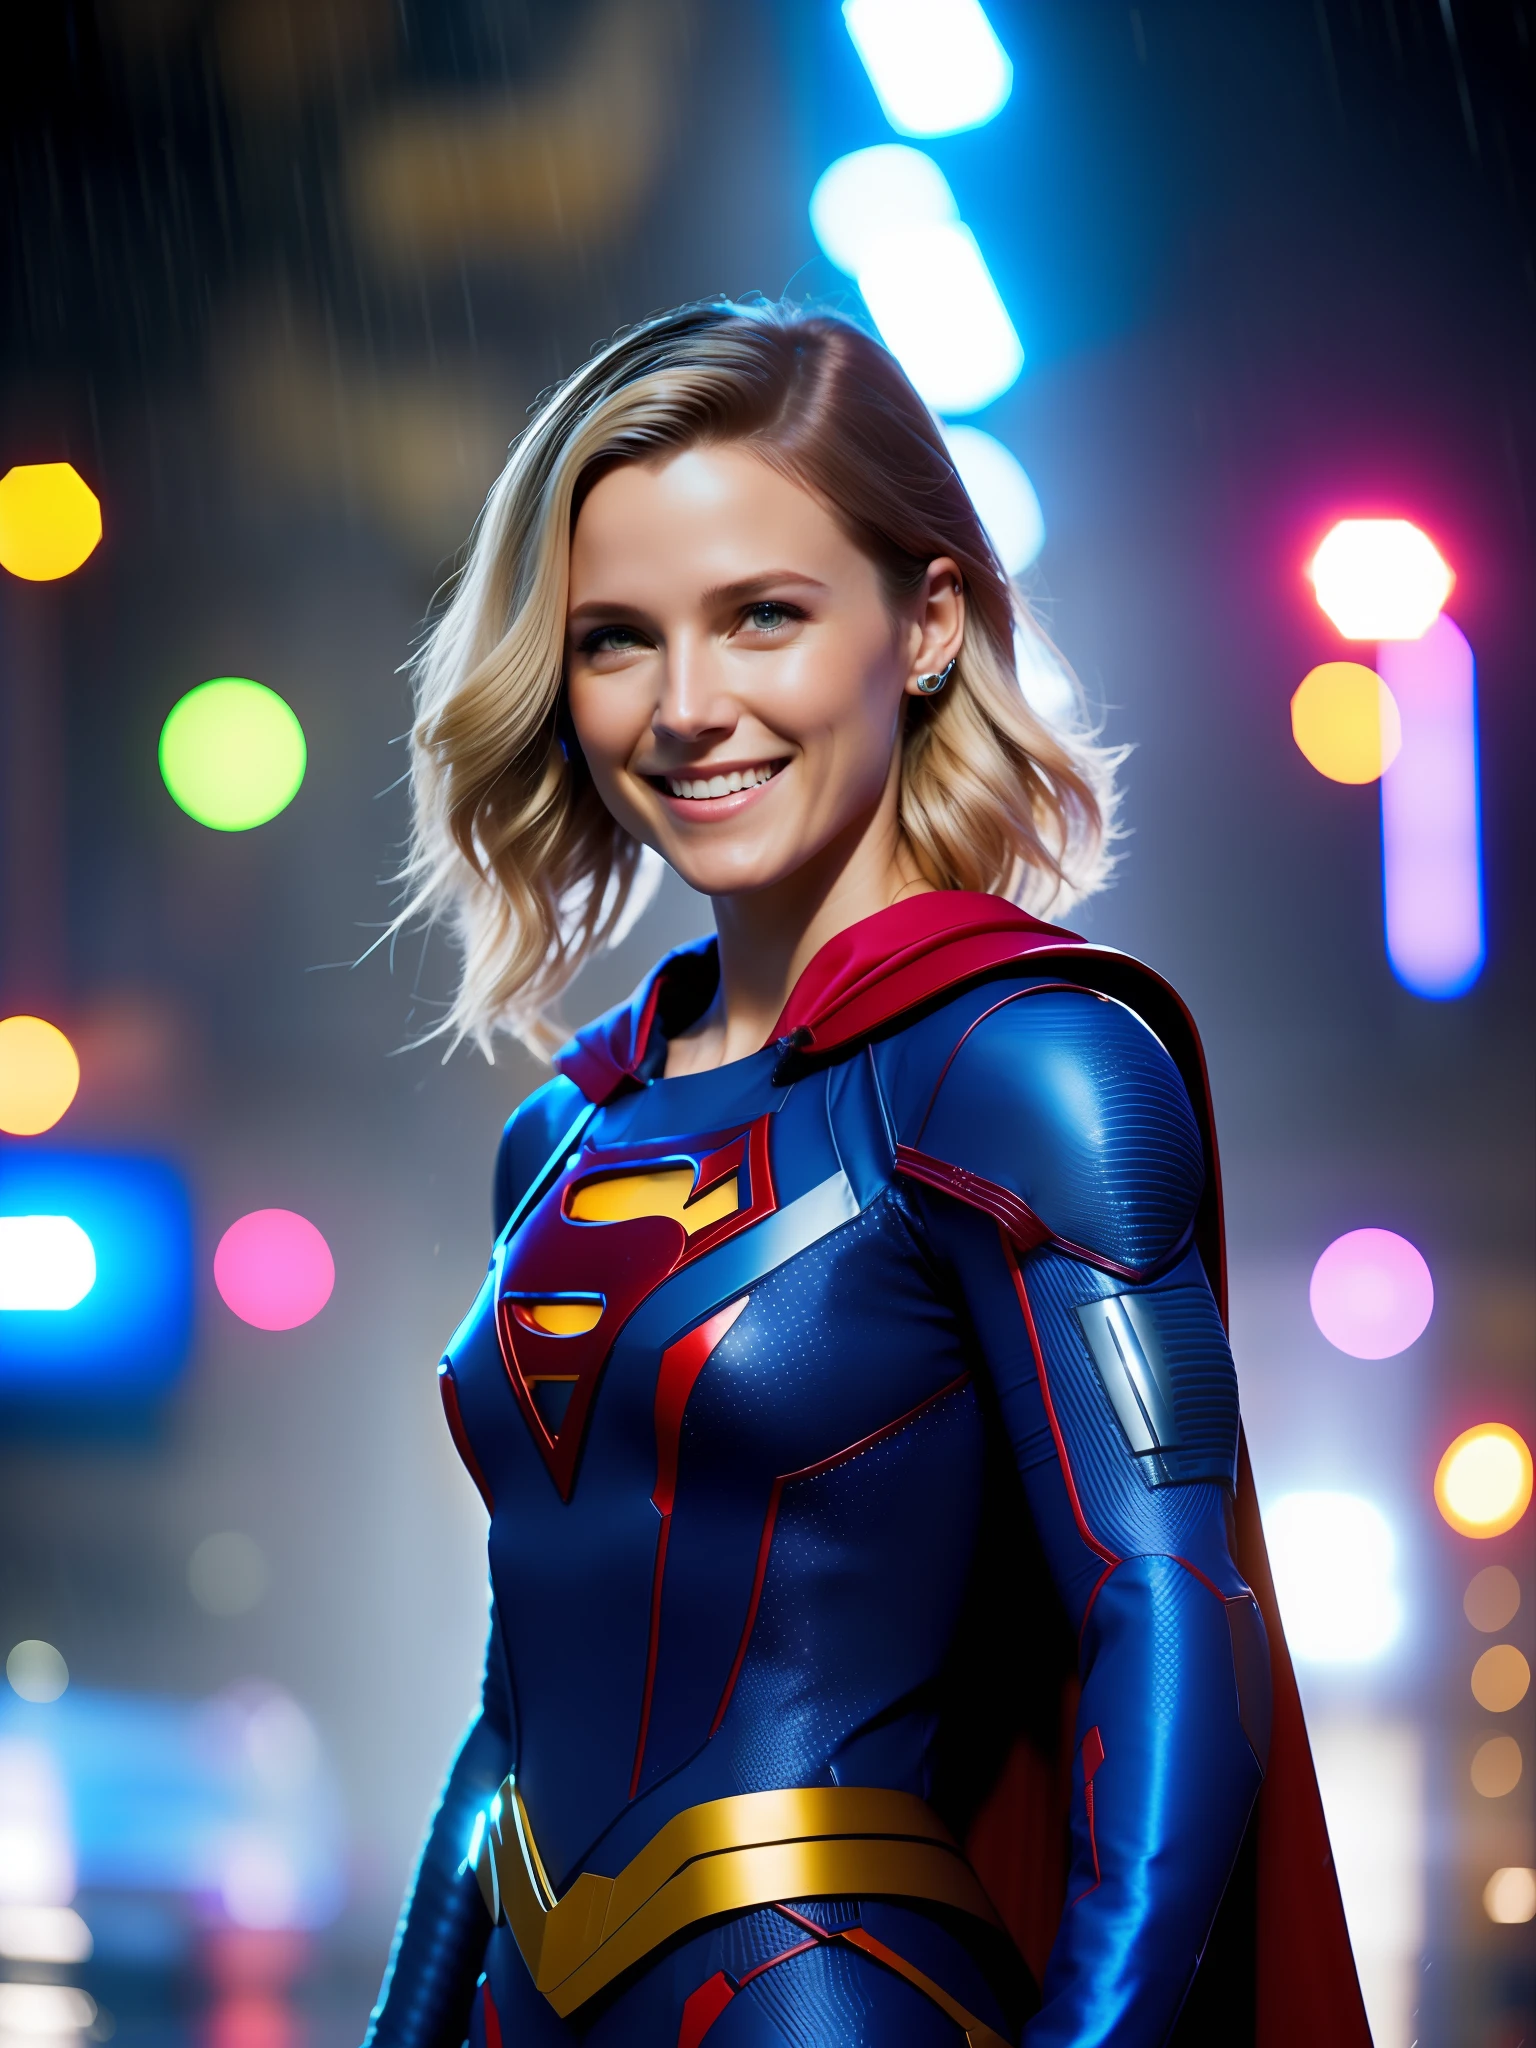 أنثى Supergirl صورة امرأة حائزة على جائزة, بدلة الأبطال الخارقين باللونين الأزرق والأحمر, الفك المربع, وجه غير متماثل, شعر قصير, تحت المطر, يبتسم, الضوء الأرجواني, 80 ملم, خوخه, تأثير الشامل, عن قرب, fking_سينما_v2, 8 كيلو, سينماtic